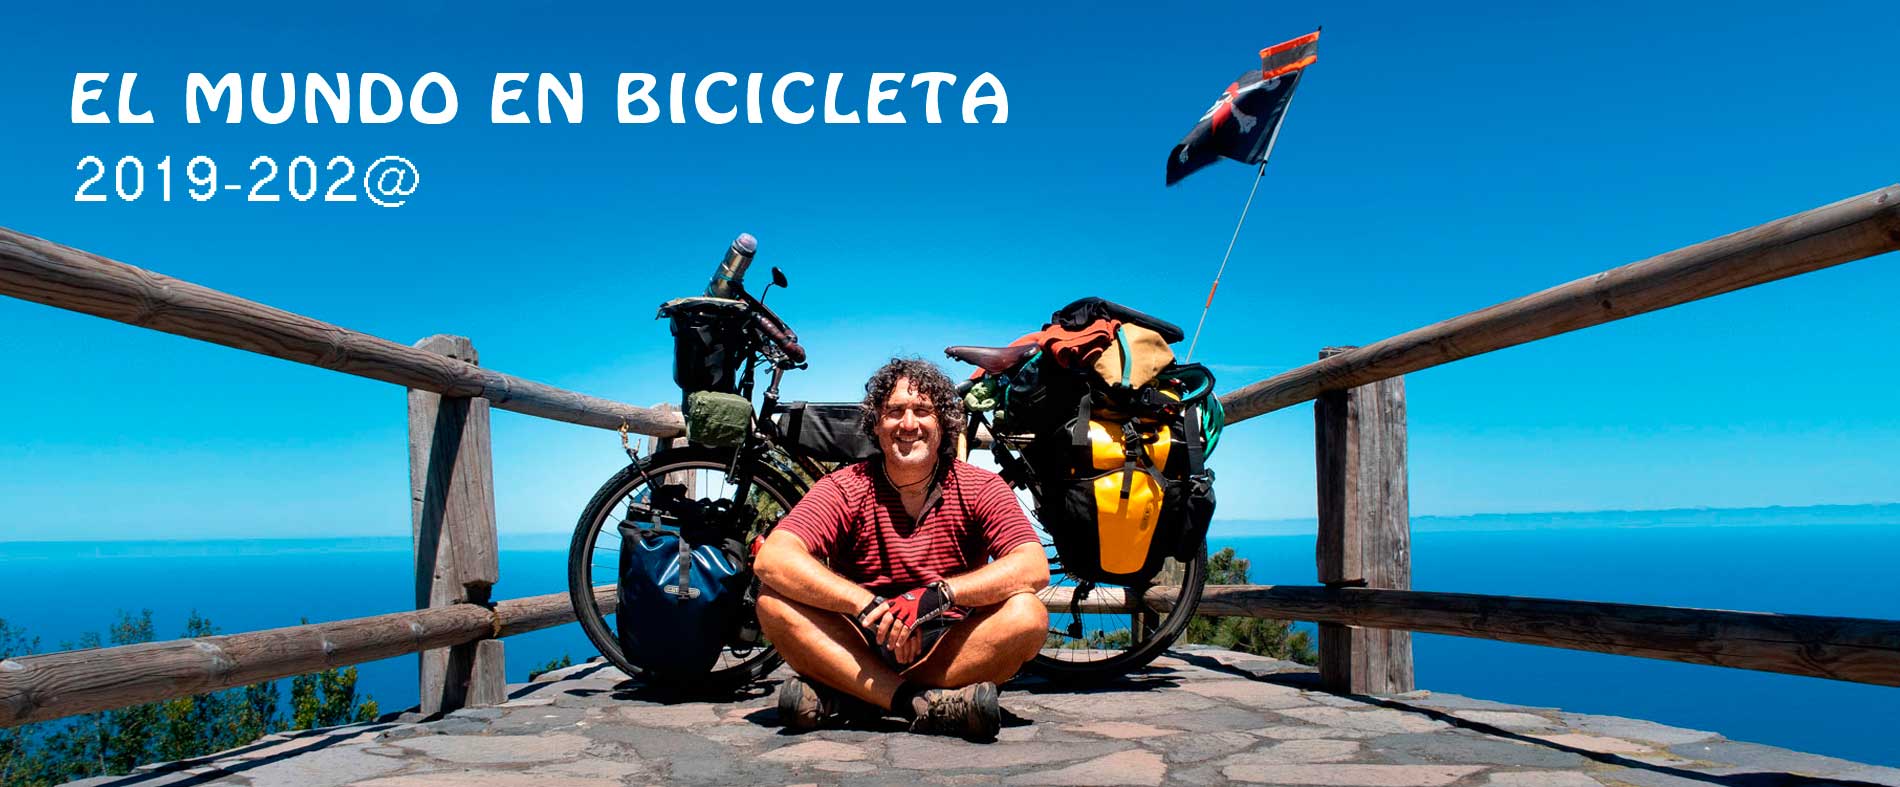 Biciruling: El mundo en bicicleta